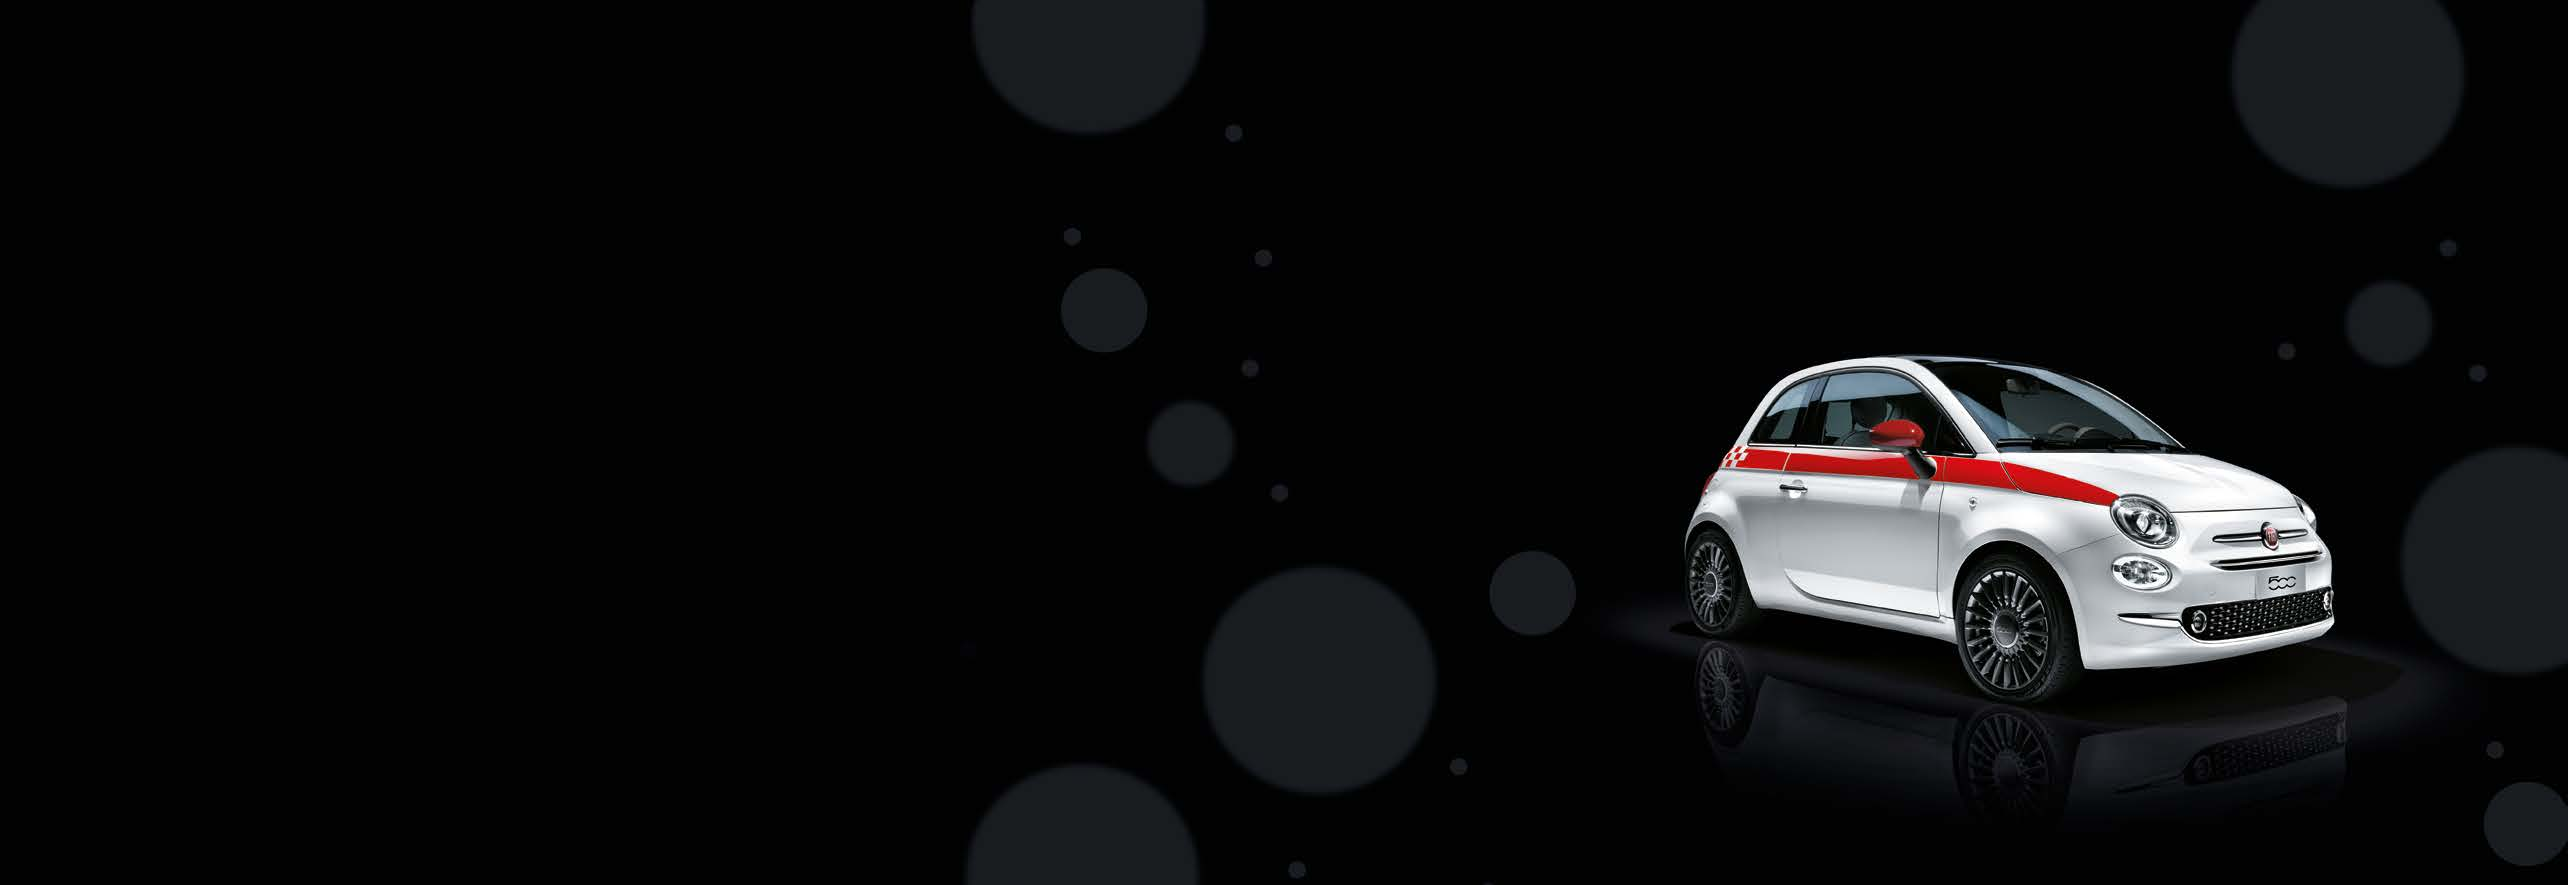 ORIGINÁLNÍ PŘÍSLUŠENSTVÍ Fiat 500 je jako vždy výjimečný a stylový. Díky příslušenství Mopar navíc nikdy nebude stejný.